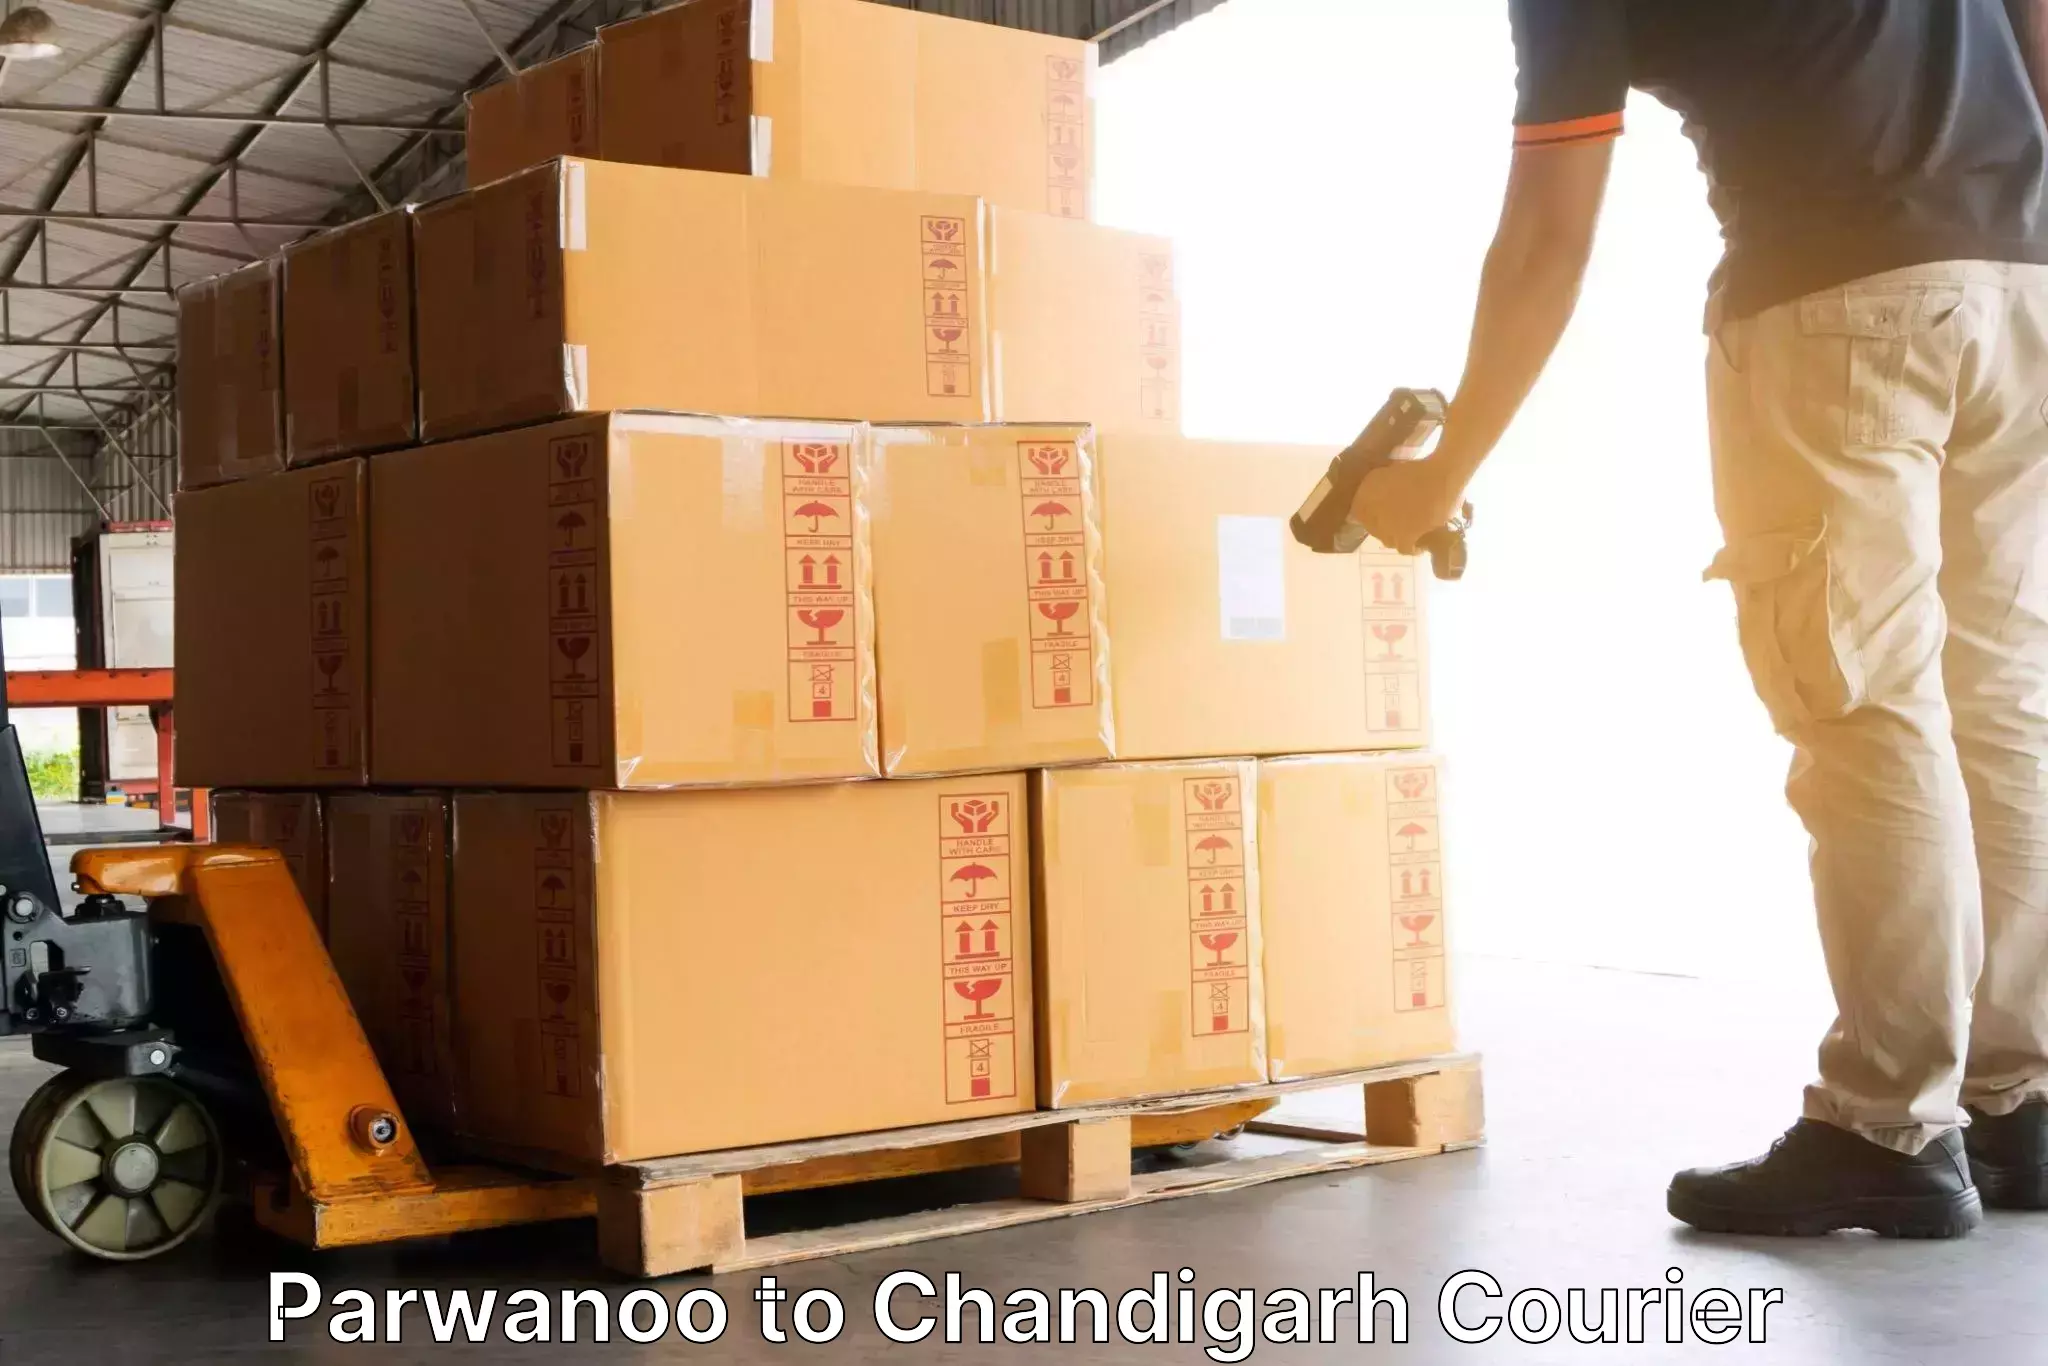 Efficient cargo services Parwanoo to Chandigarh